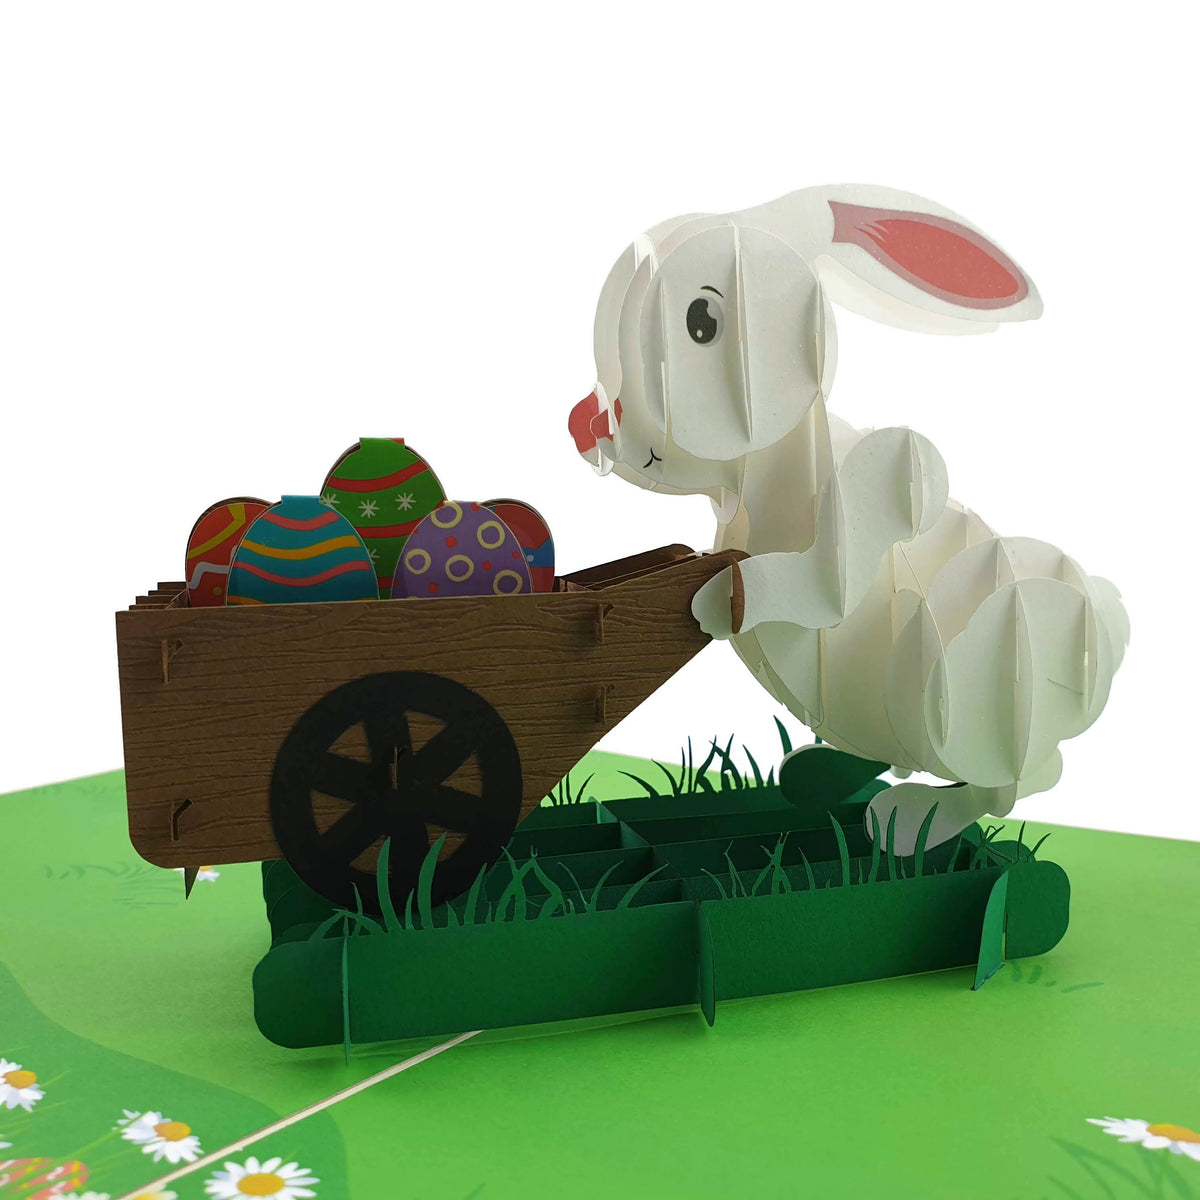 Easter Bunny Egg Hunt Pop Up Card (Large)